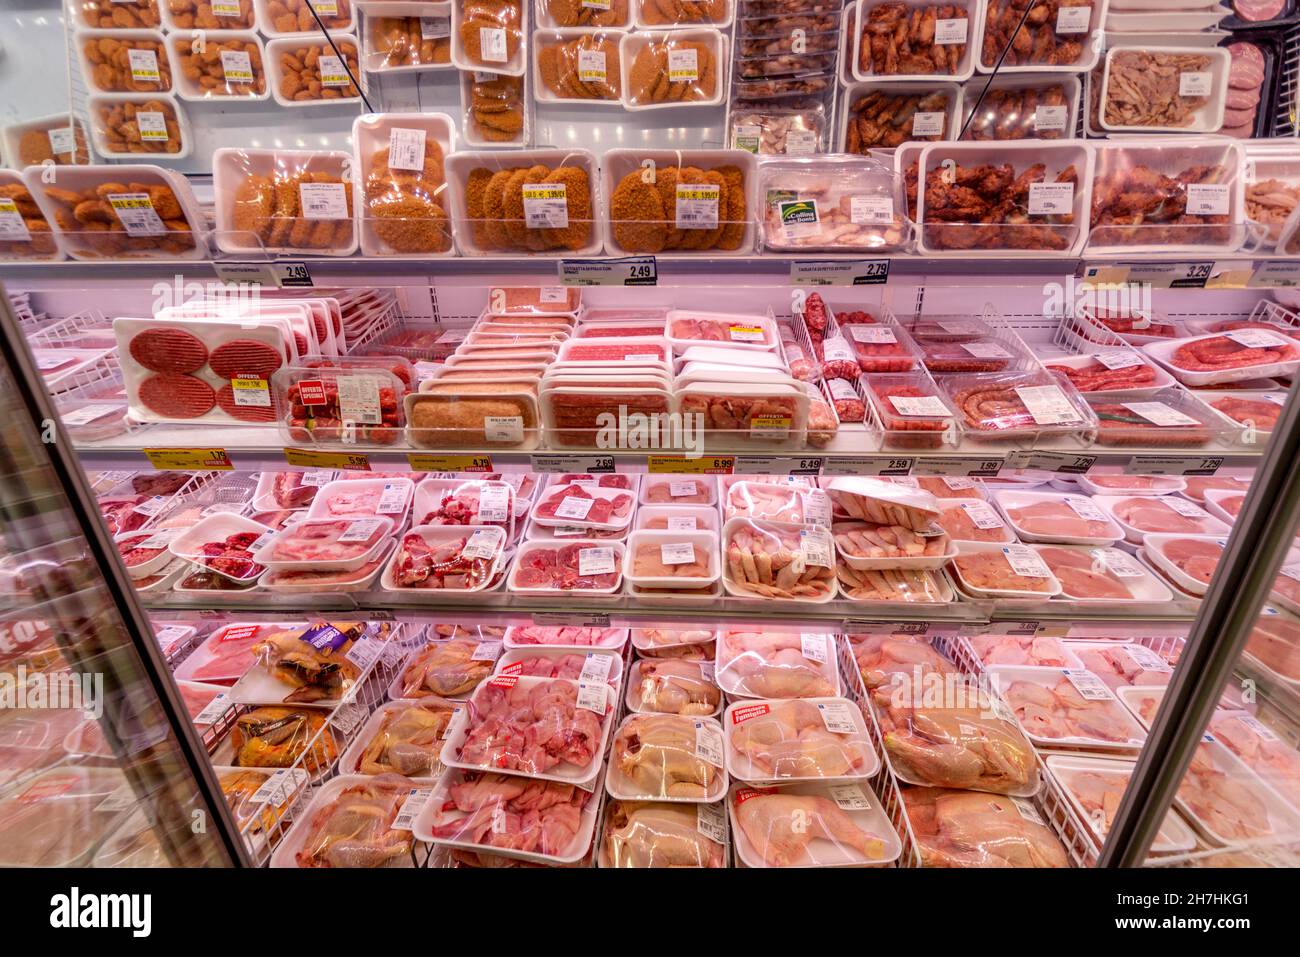 Fossano, Italie - 24 octobre 2021 : vue d'ensemble du compartiment réfrigérateur de la viande emballée de différents types dans le supermarché italien Banque D'Images